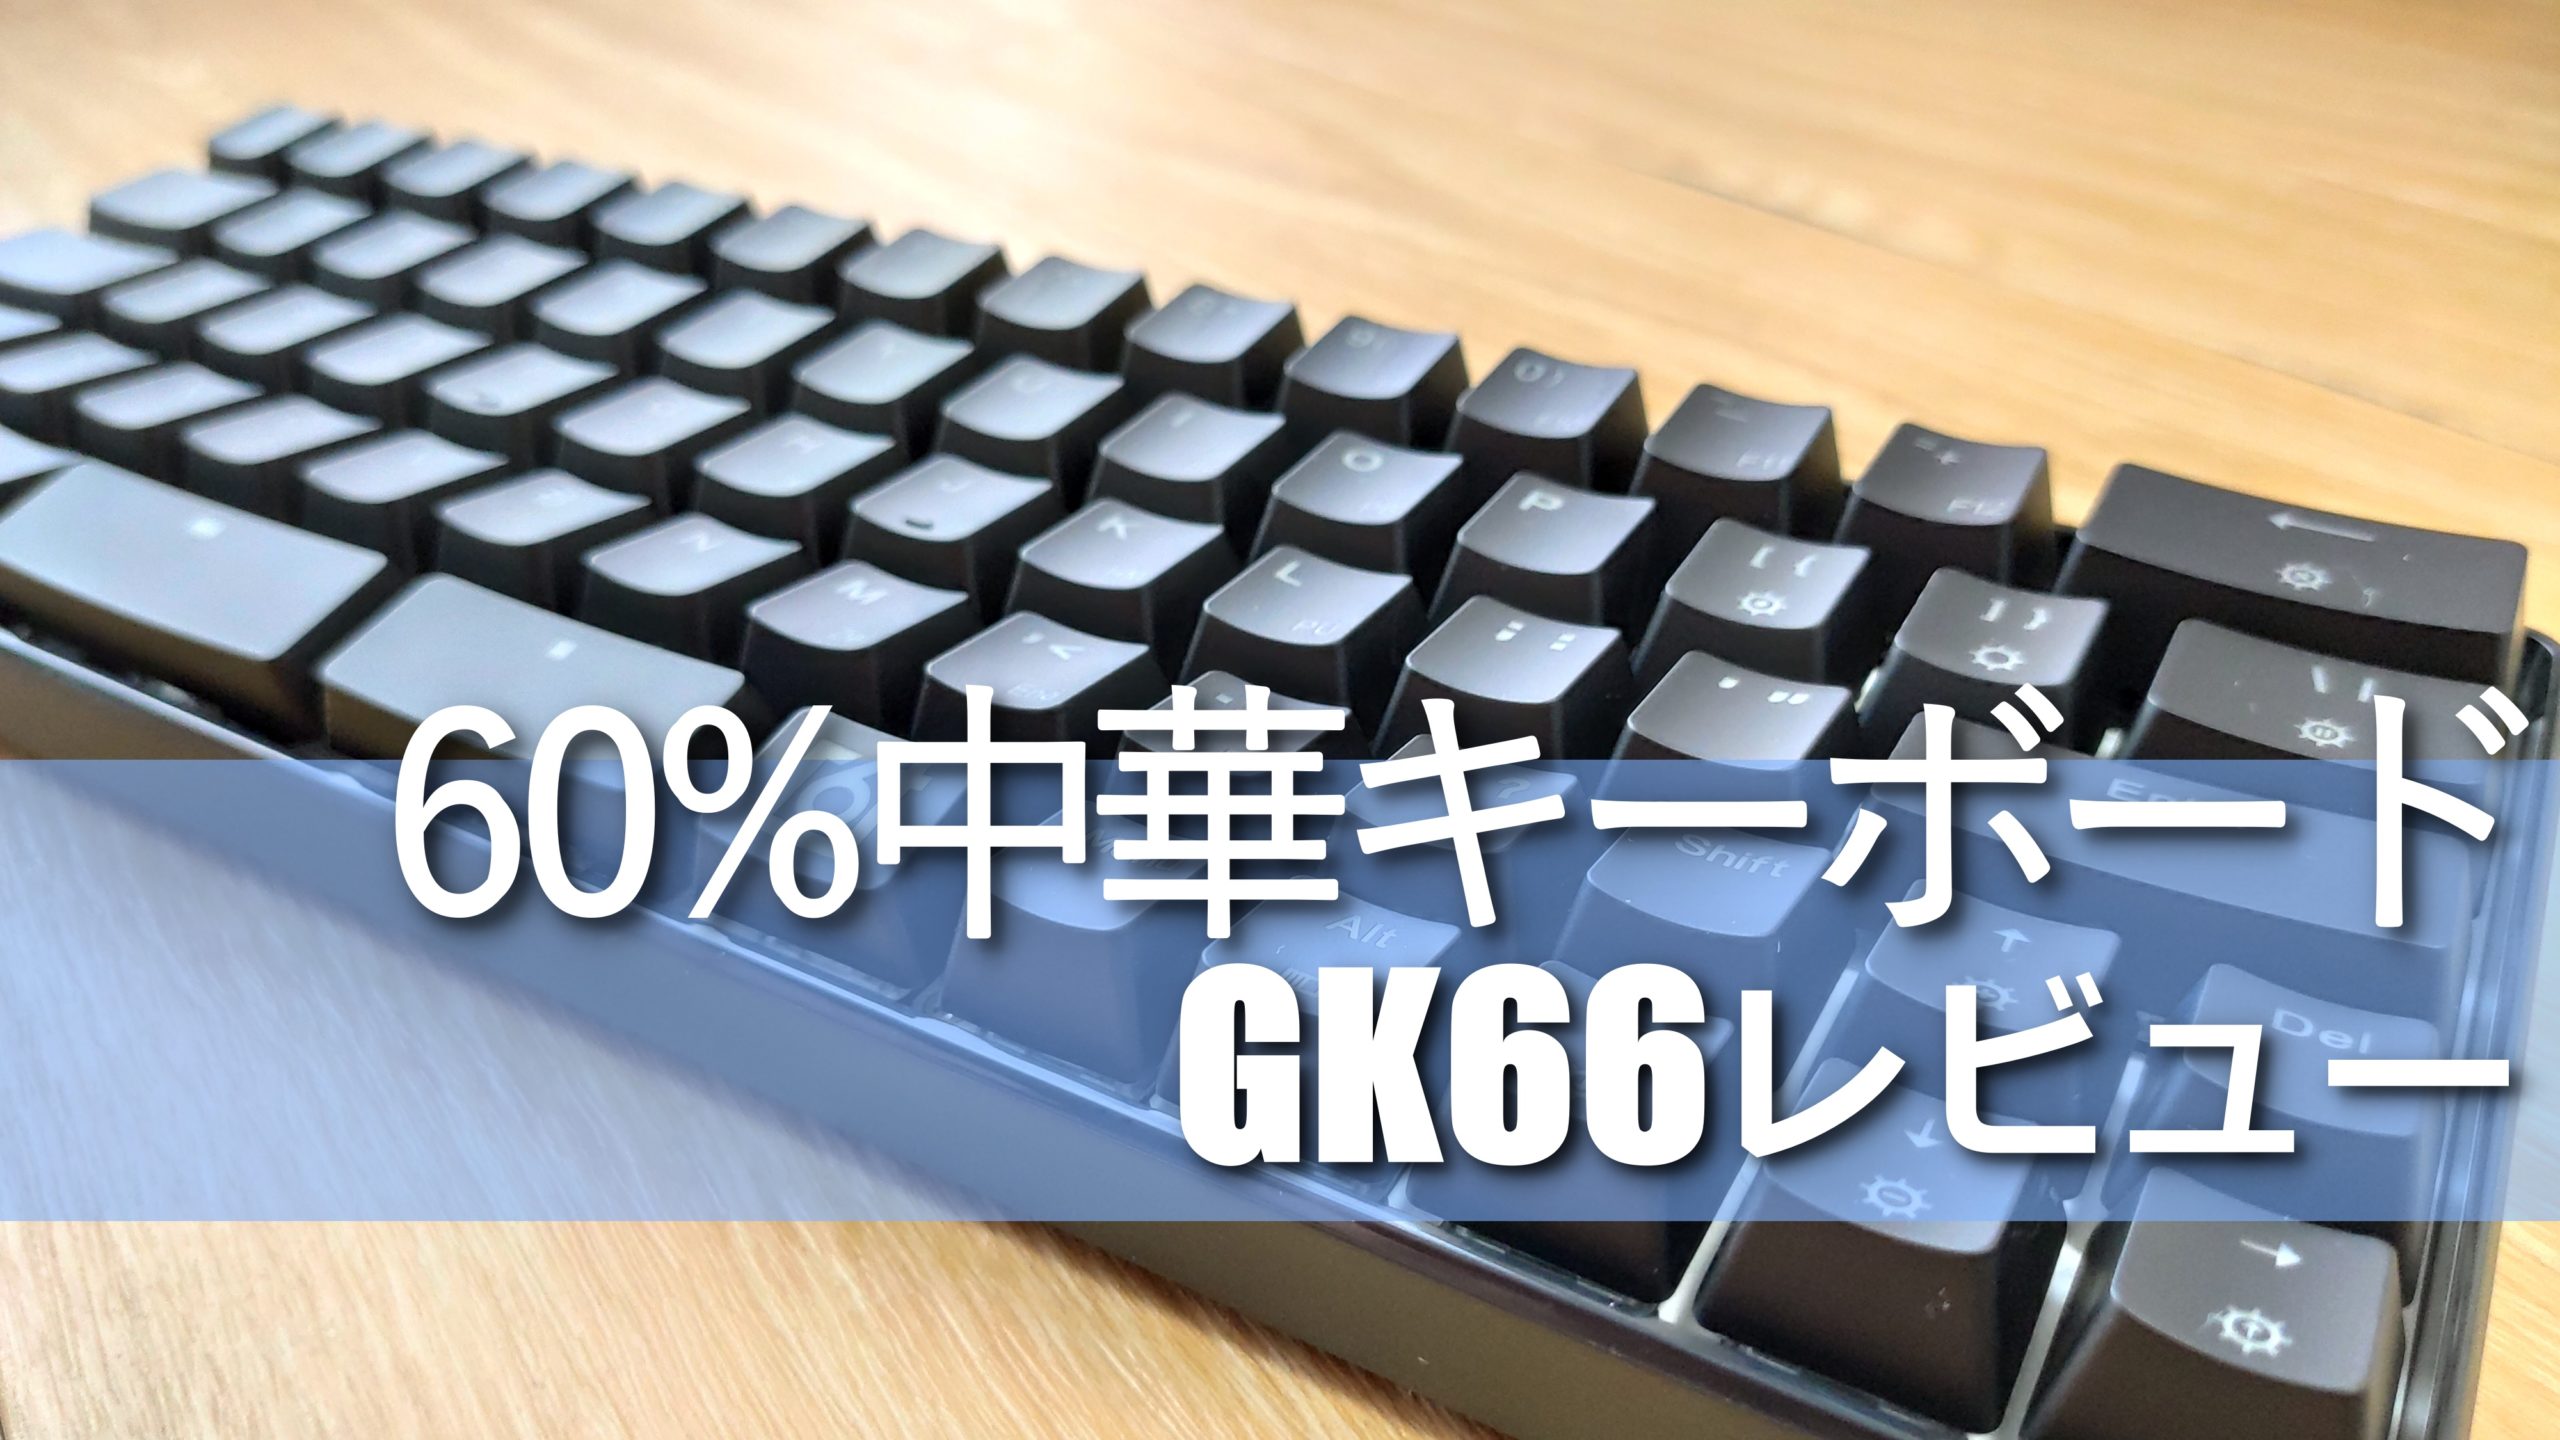 GK66